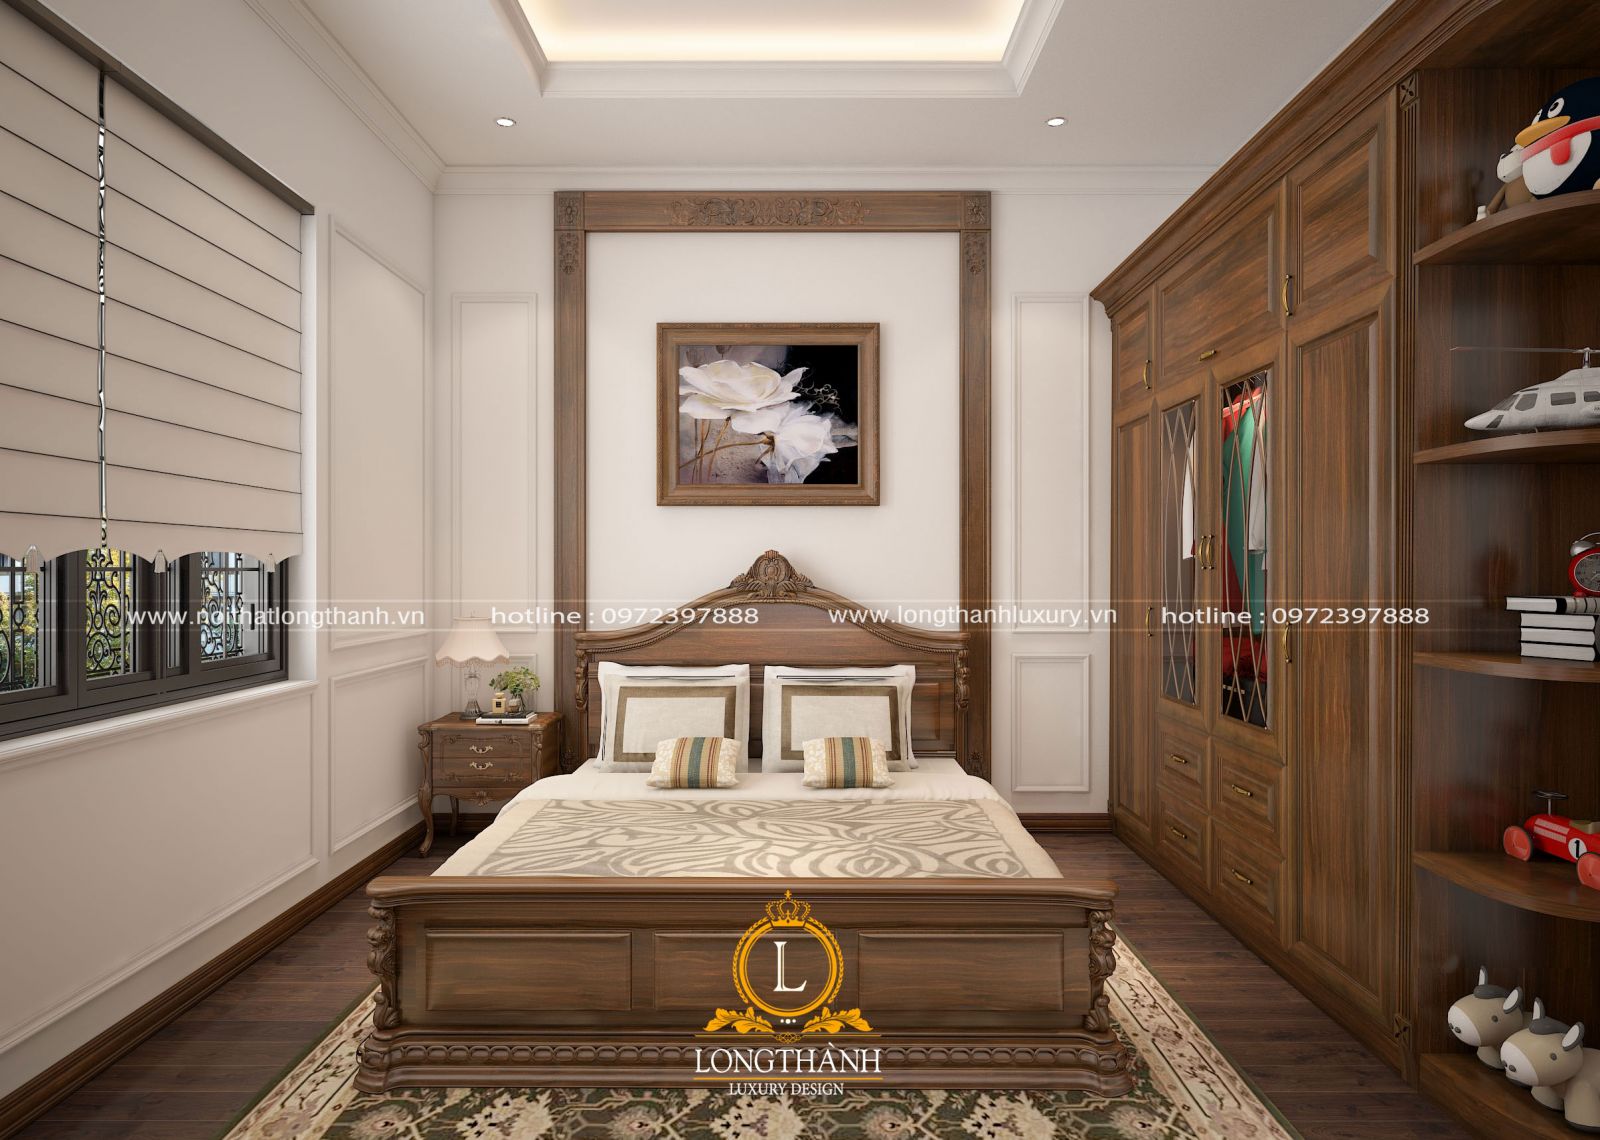 Không gian phòng ngủ cao cấp được sử dụng nội thất  hoàn toàn từ chất lượng gỗ tự nhiên